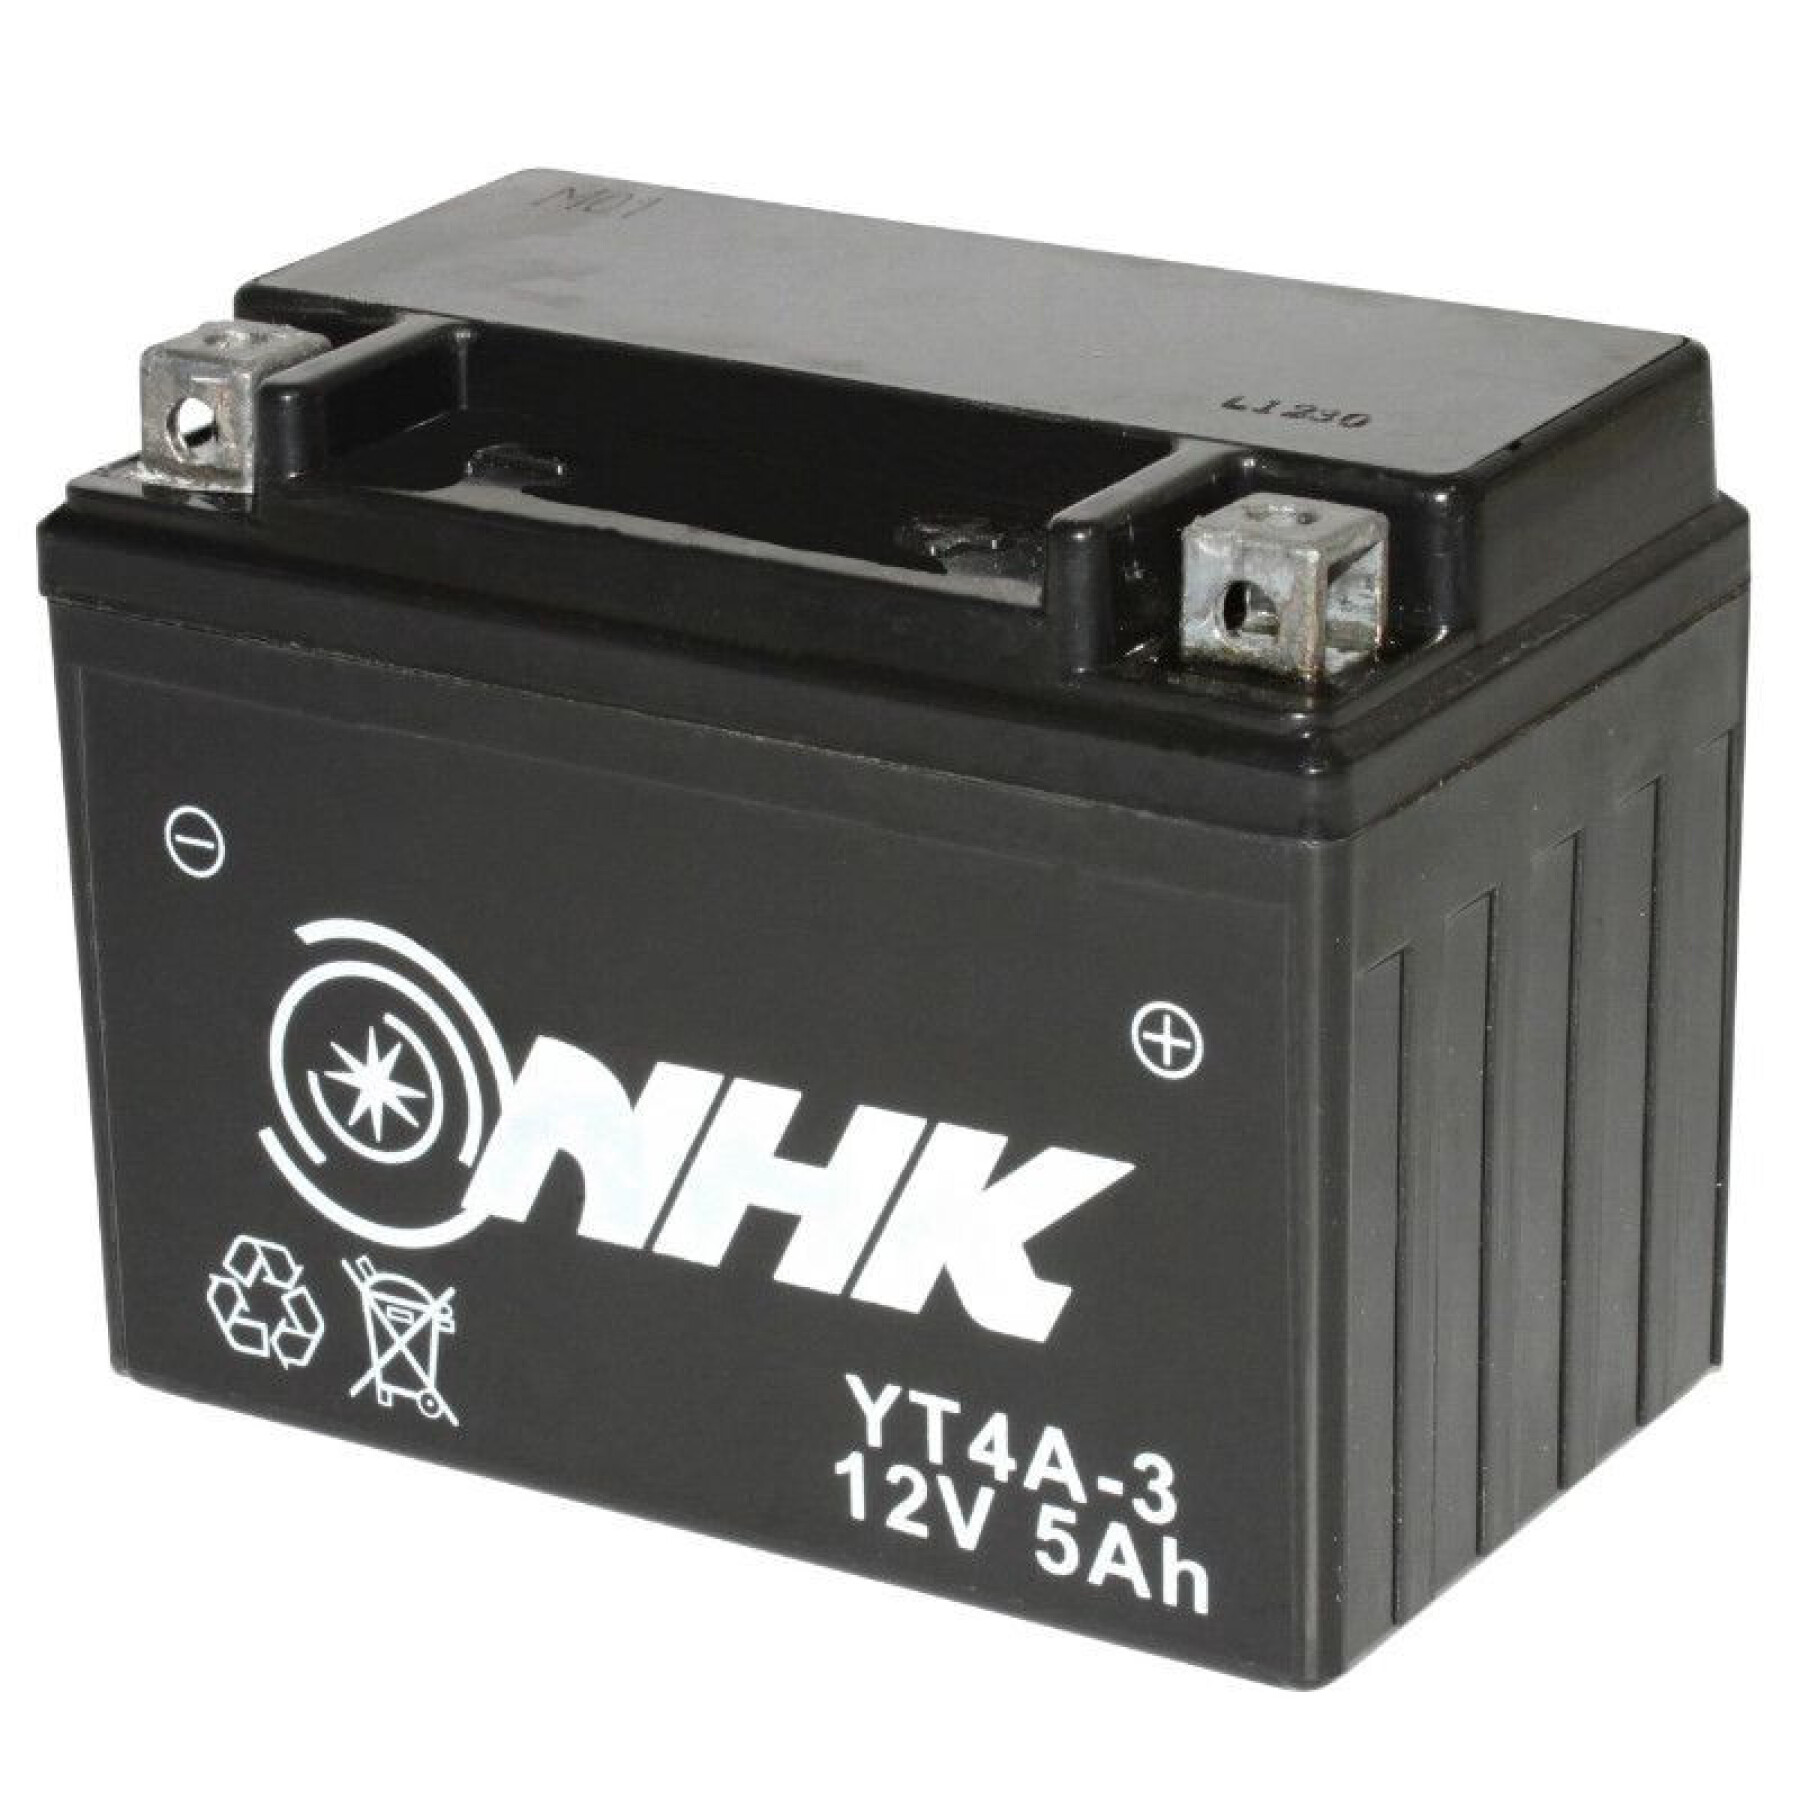 Batteria NHK Nt4a-3 Fa 12v 5 Ah